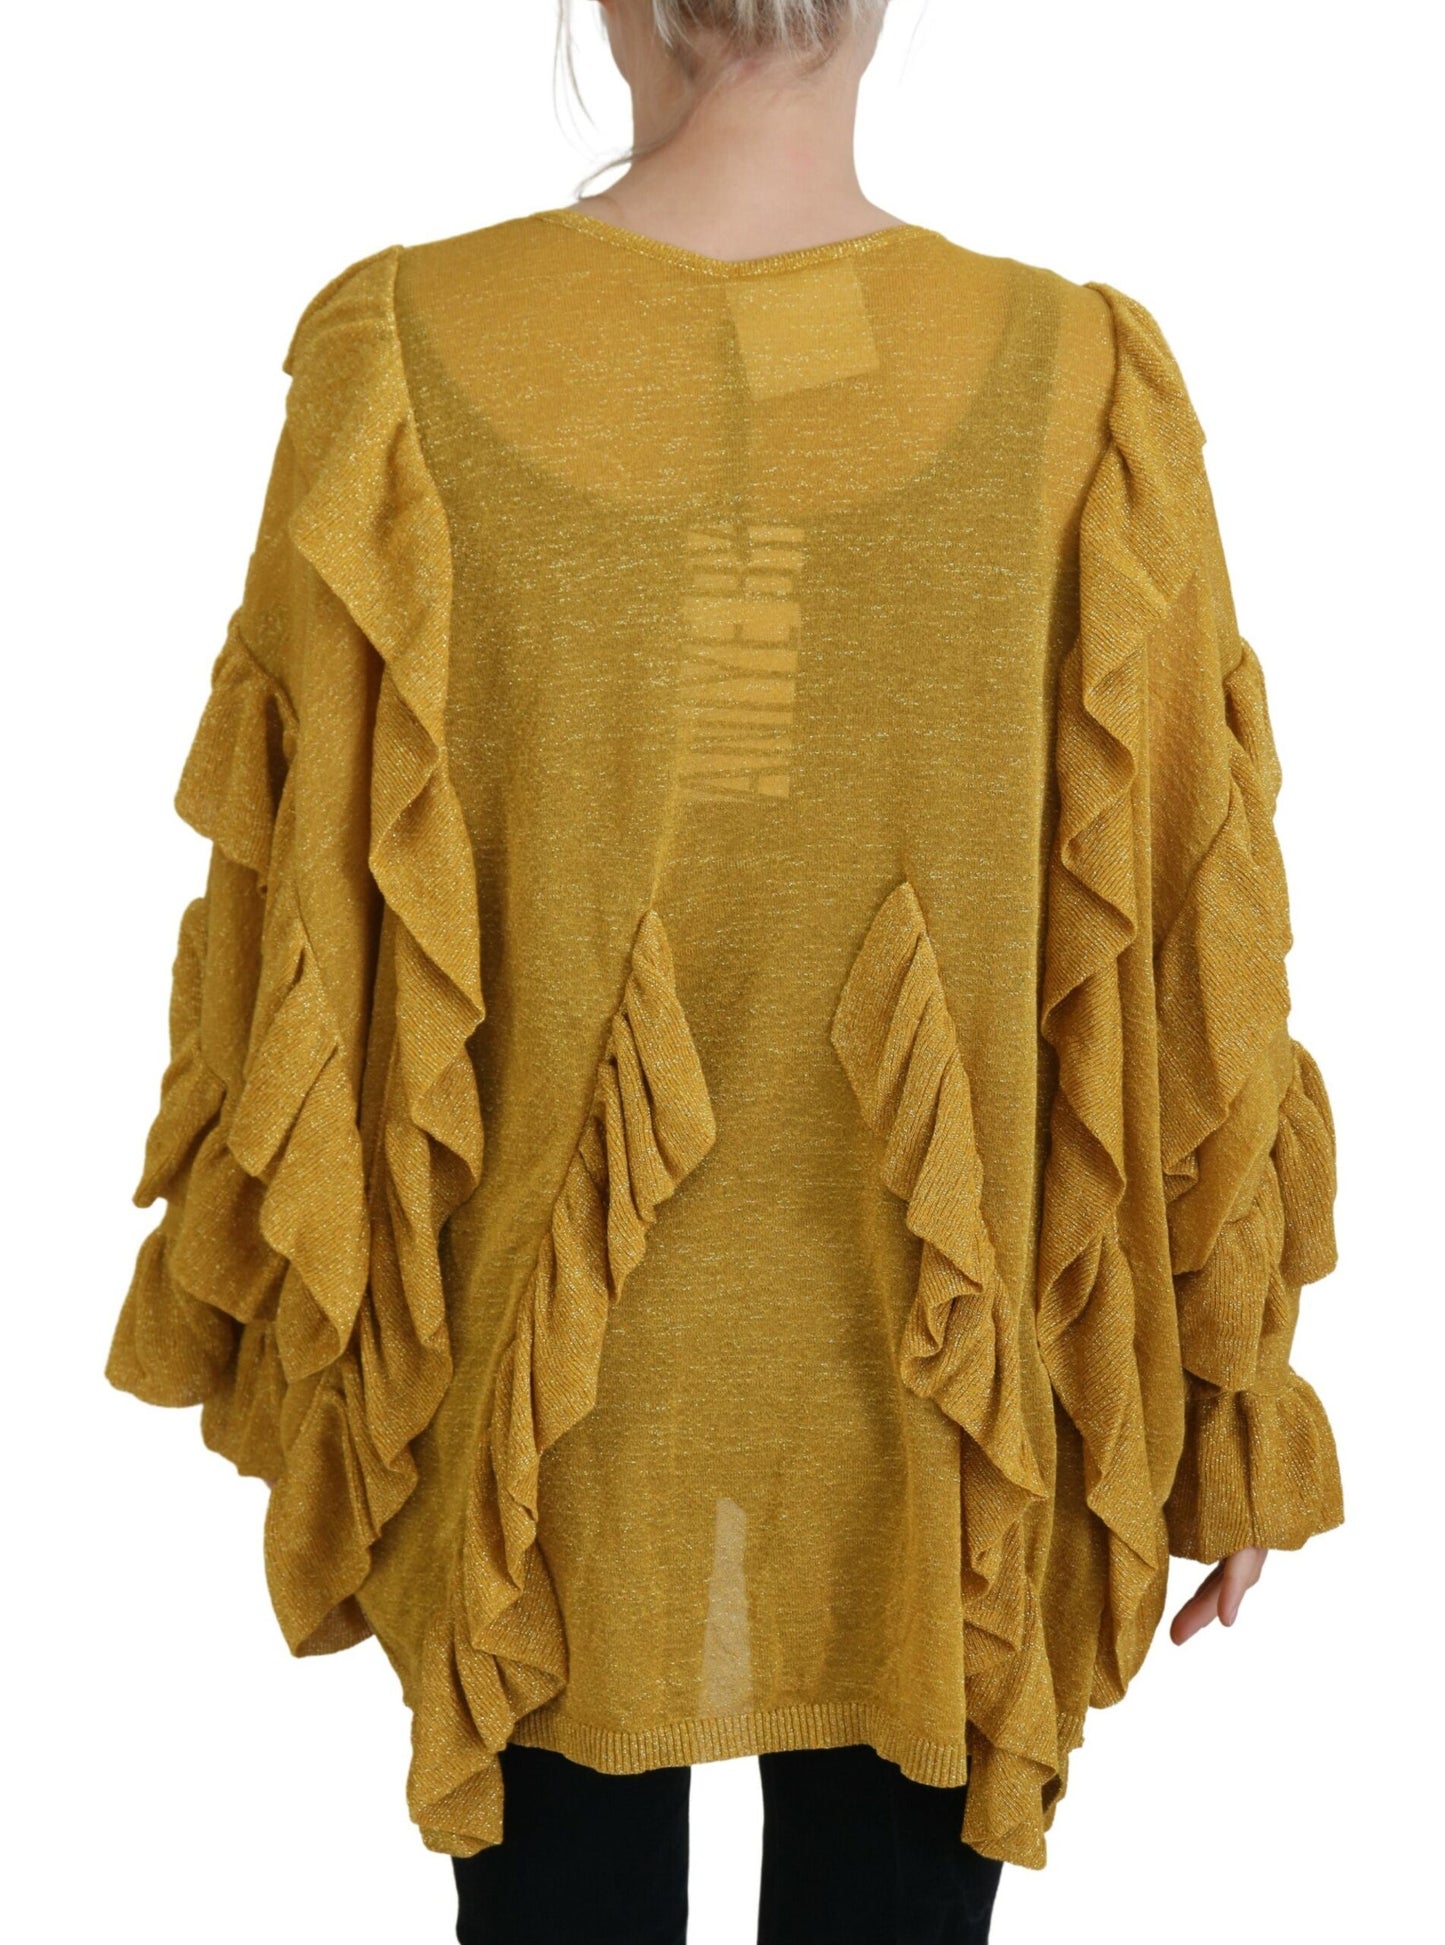 Elegant Gold Cardigan Sweater